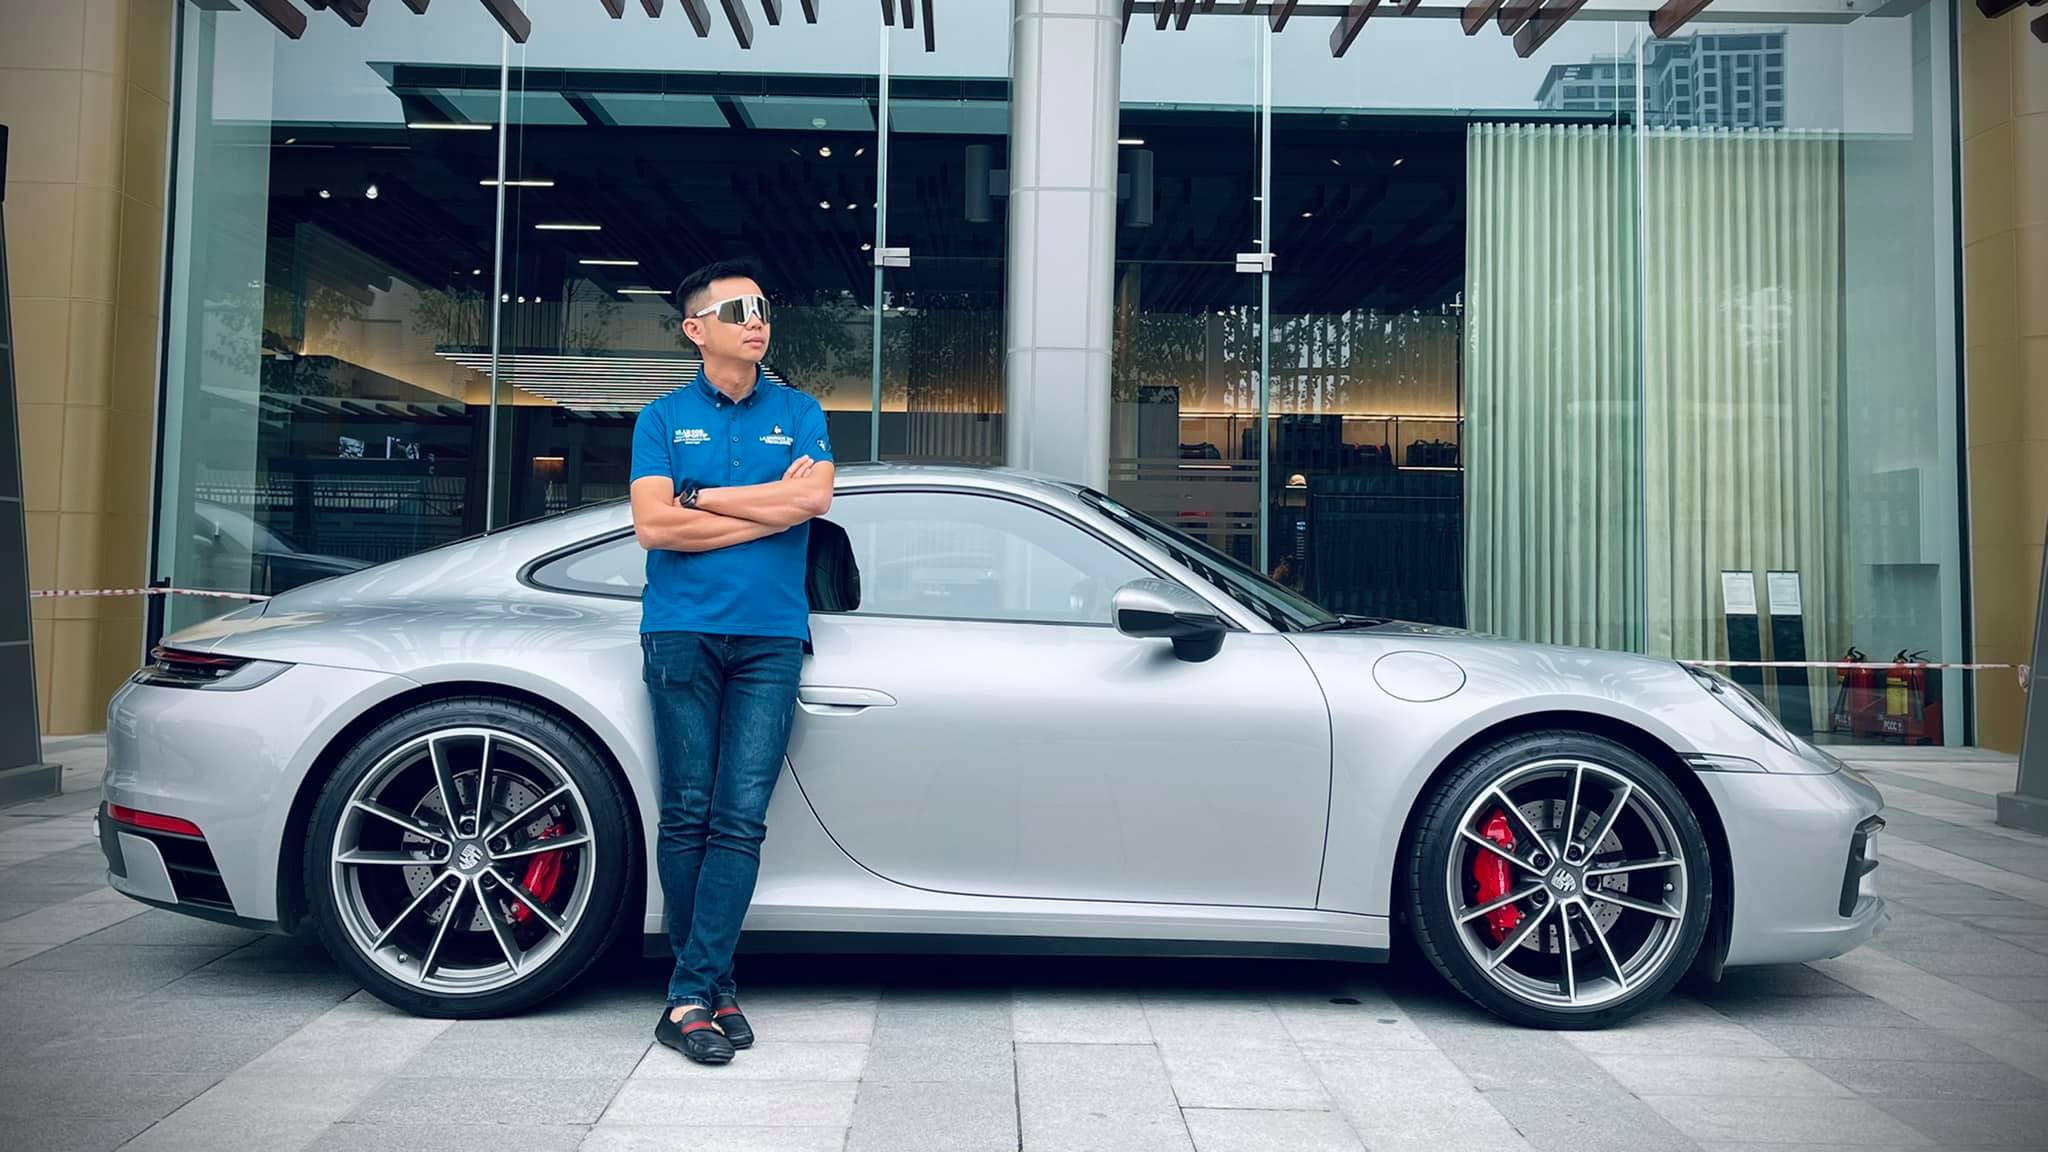 Lọt vào Studio triệu đô Porsche Hà Nội